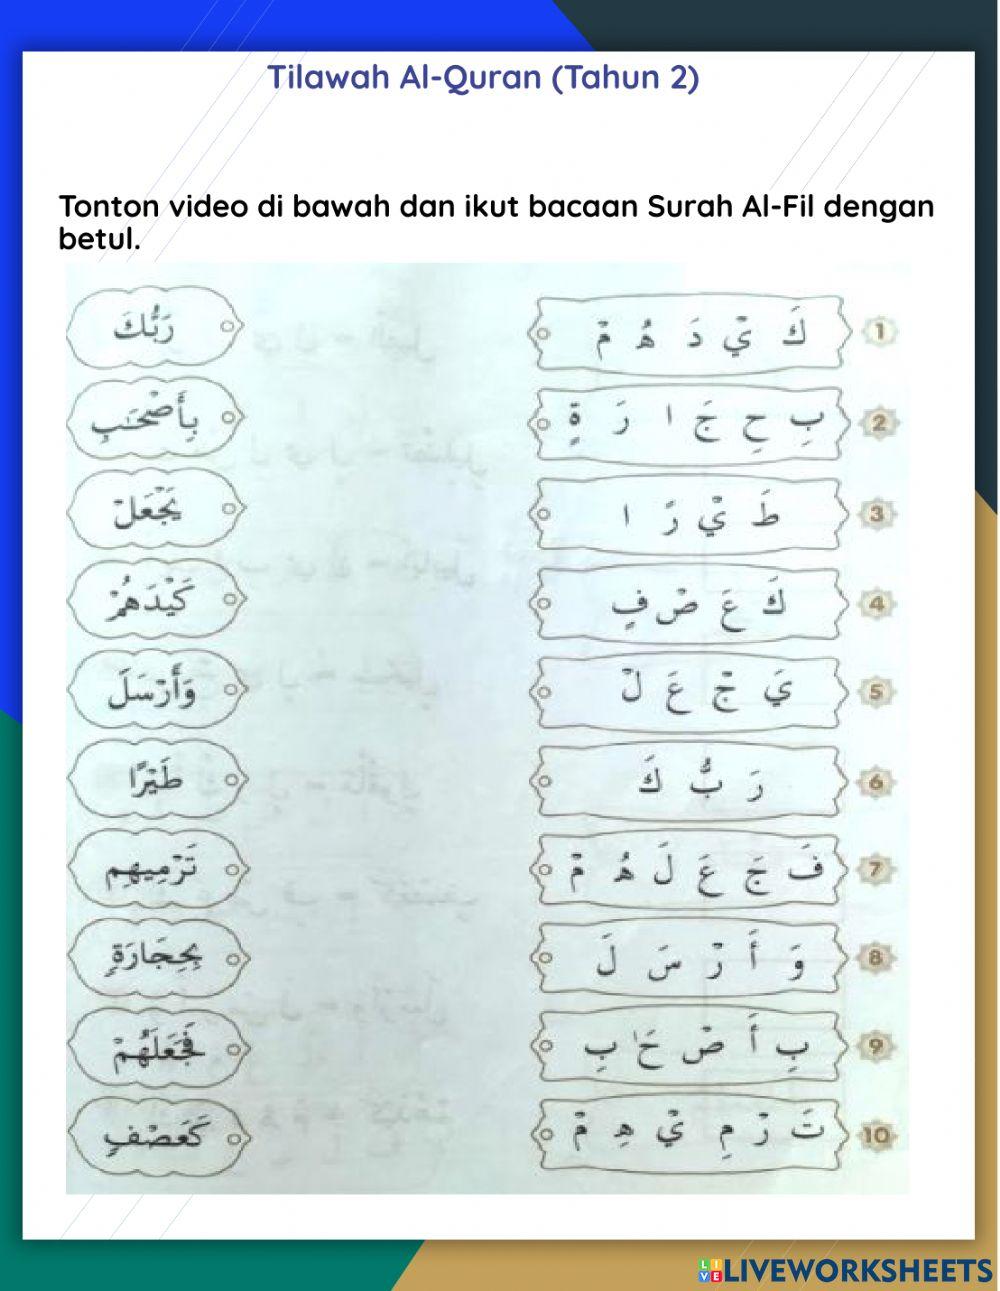 Tilawah Al-Quran(Surah Al-Fil)